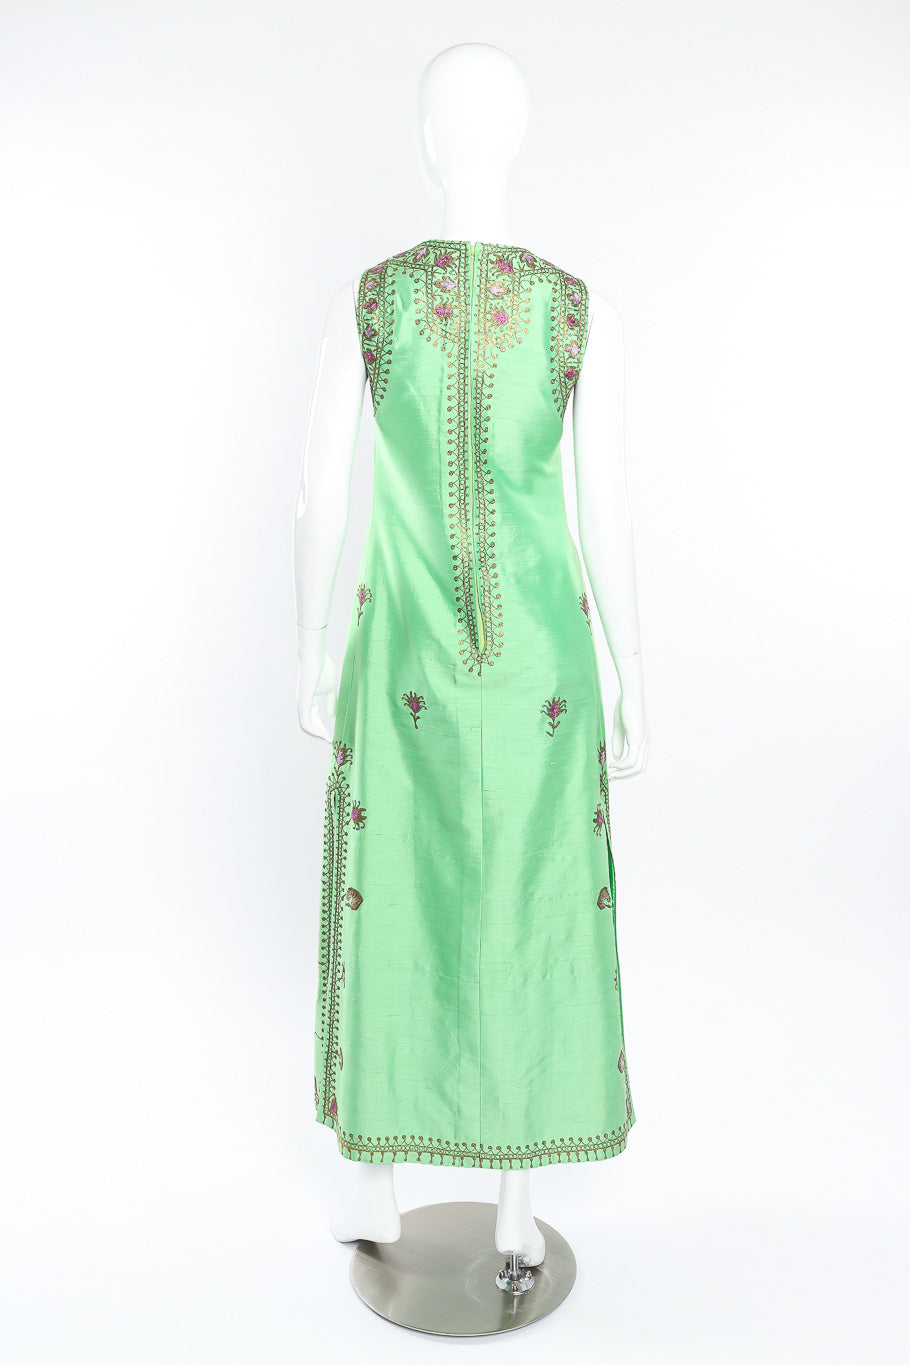 Vintage Artisans Brocade Embellished Tunic Dress back view on mannequin @Recessla